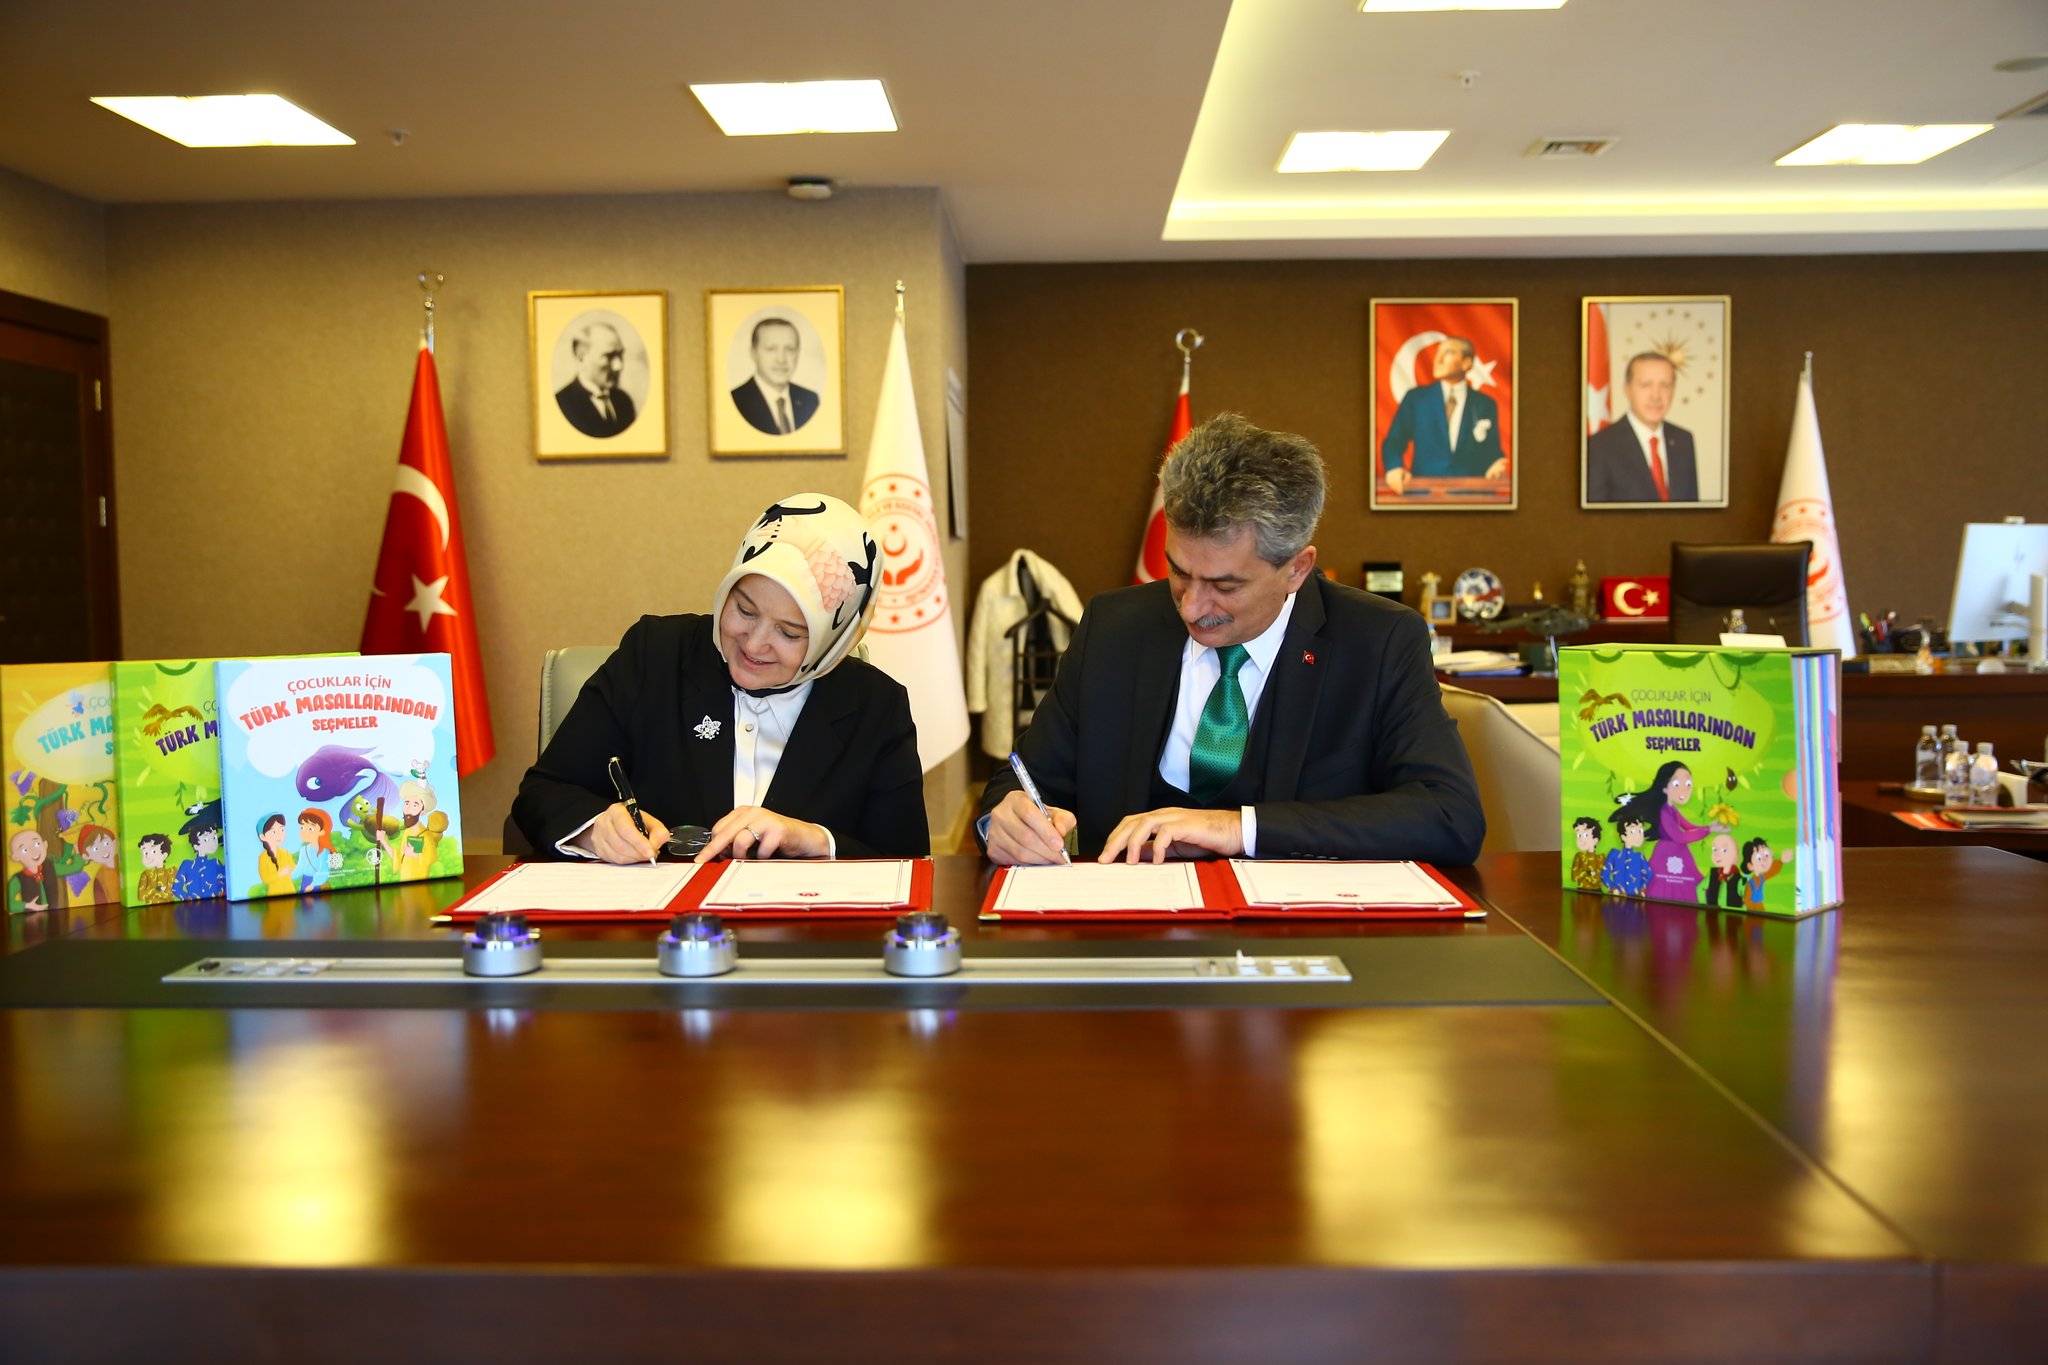 Bakanlığımız ile Atatürk Kültür Merkezi Başkanlığı arasında, koruma ve bakım altındaki çocuklarımıza yönelik iş birliği protokolü imzalandı.